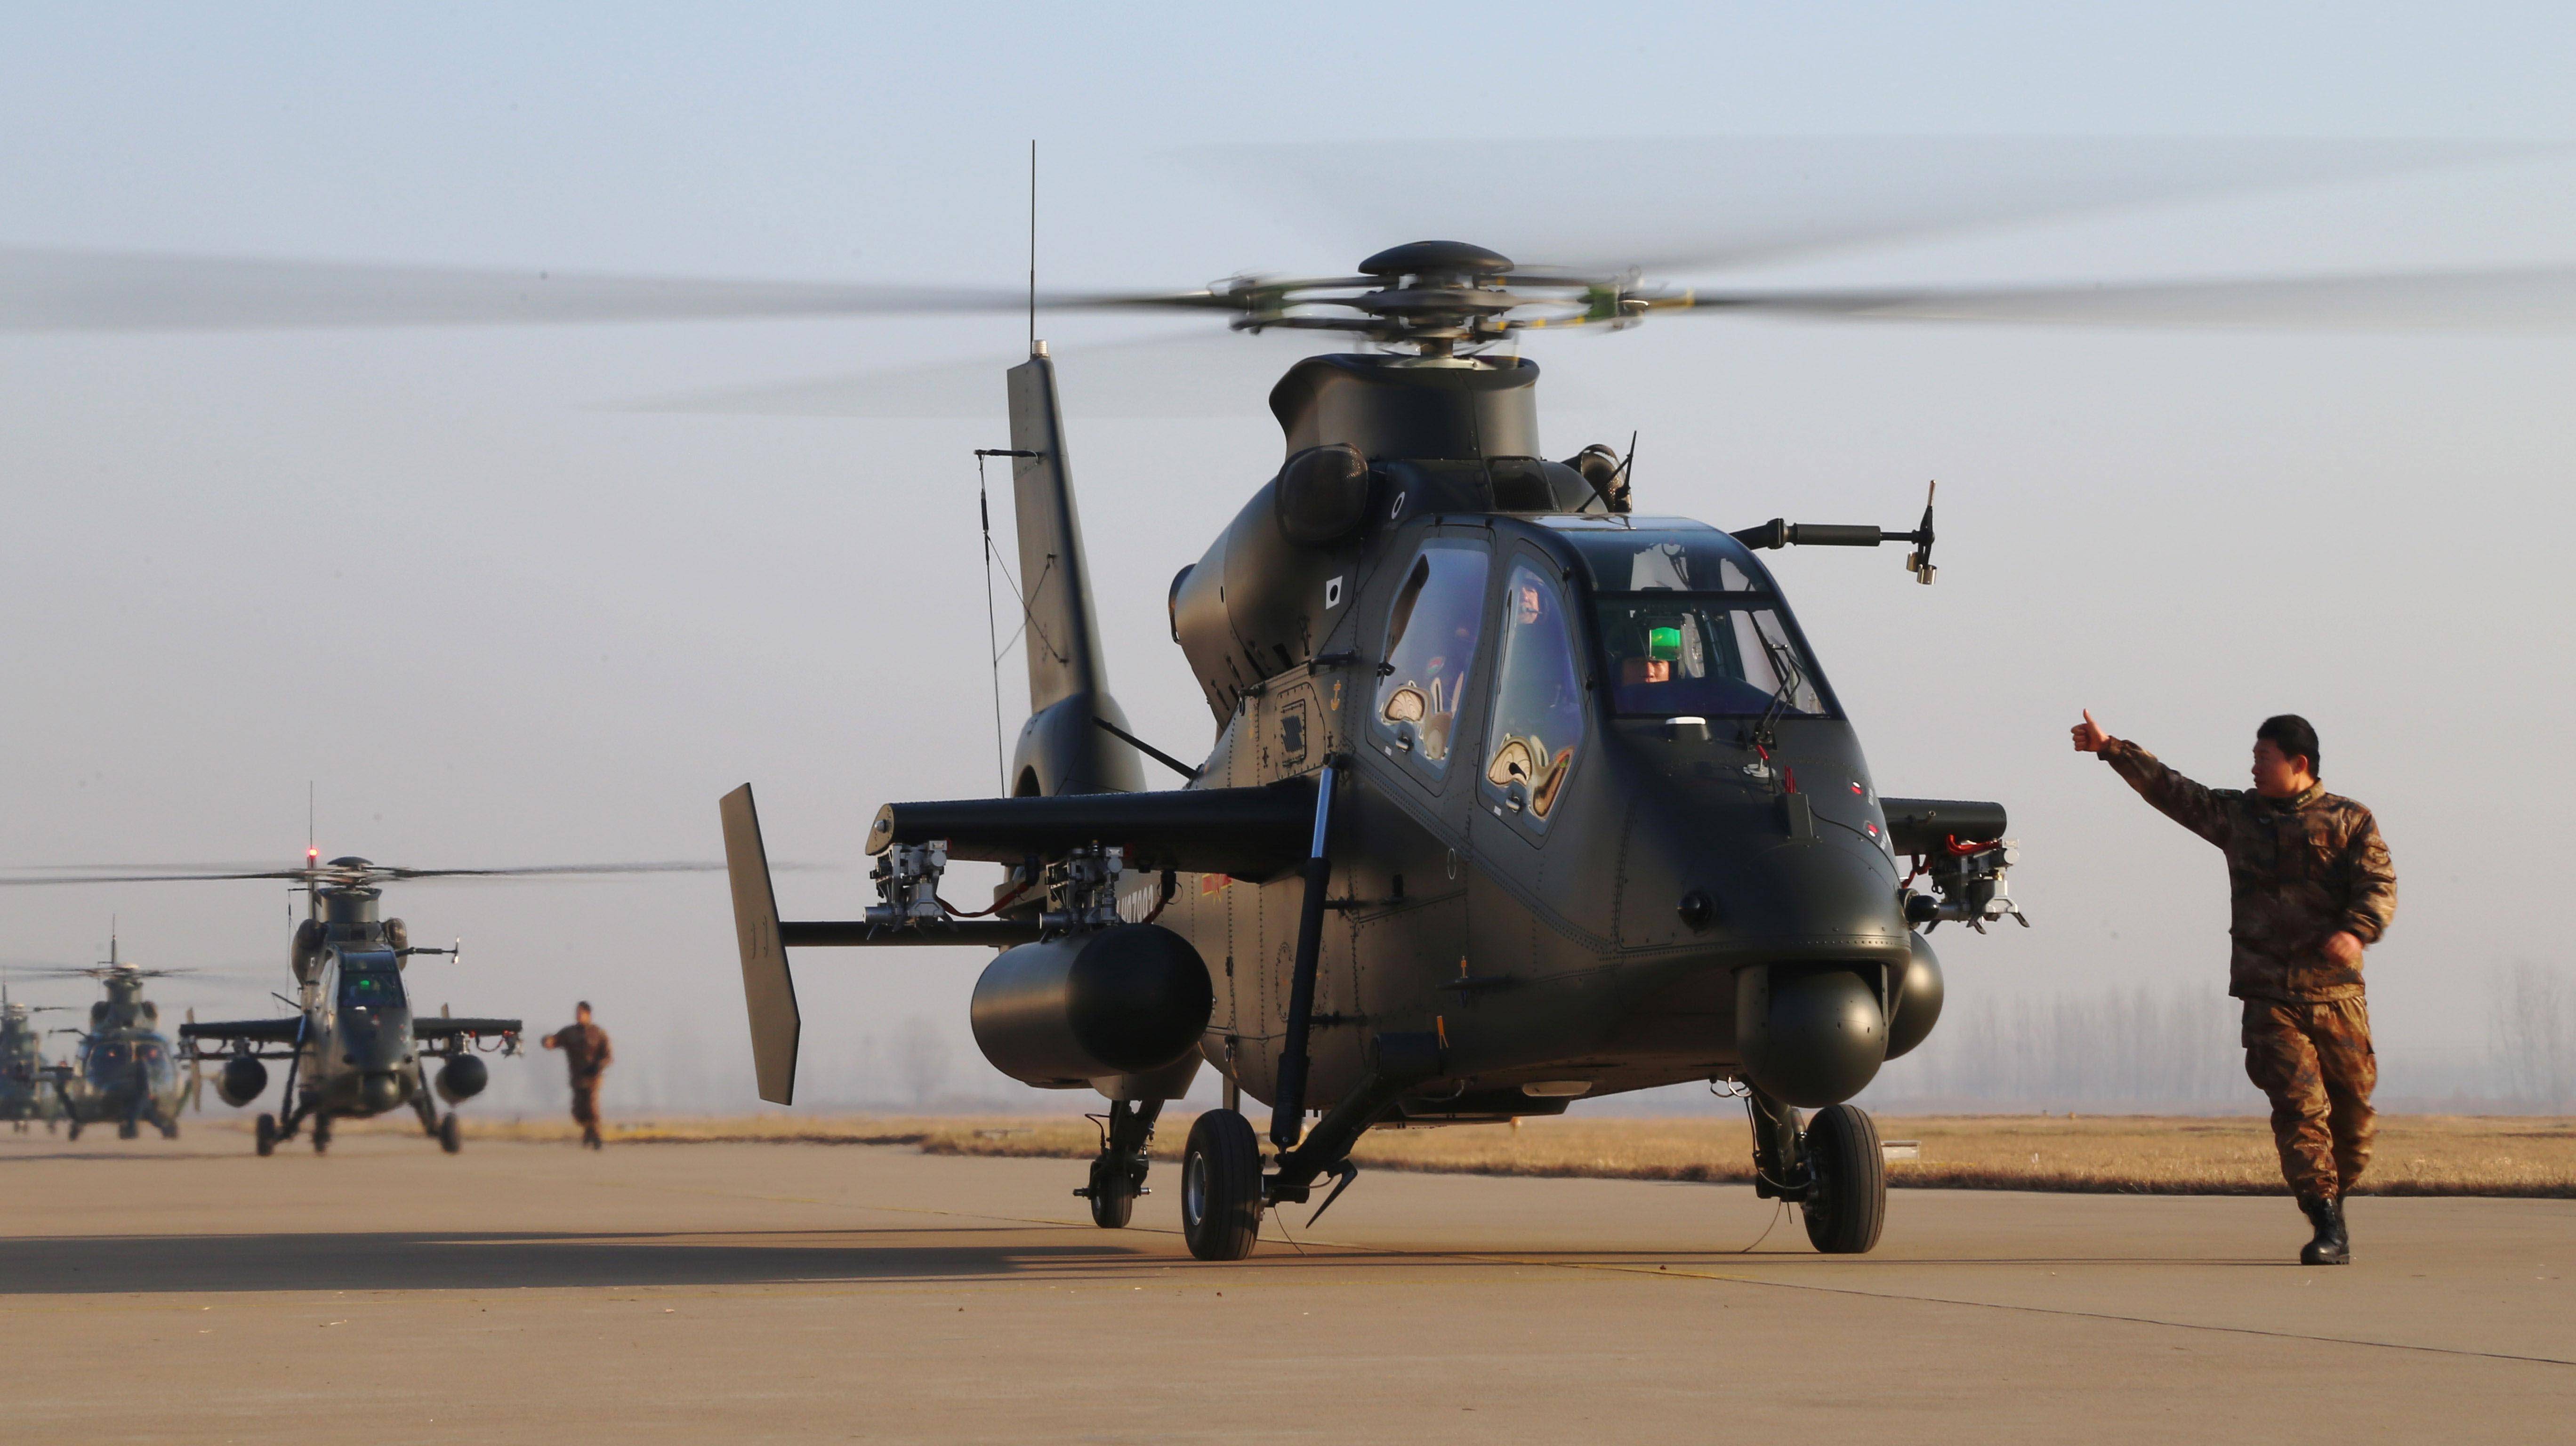 旋翼轴上方装有毫米波雷达的武装直升机除ah-64d长弓阿帕奇外,还有